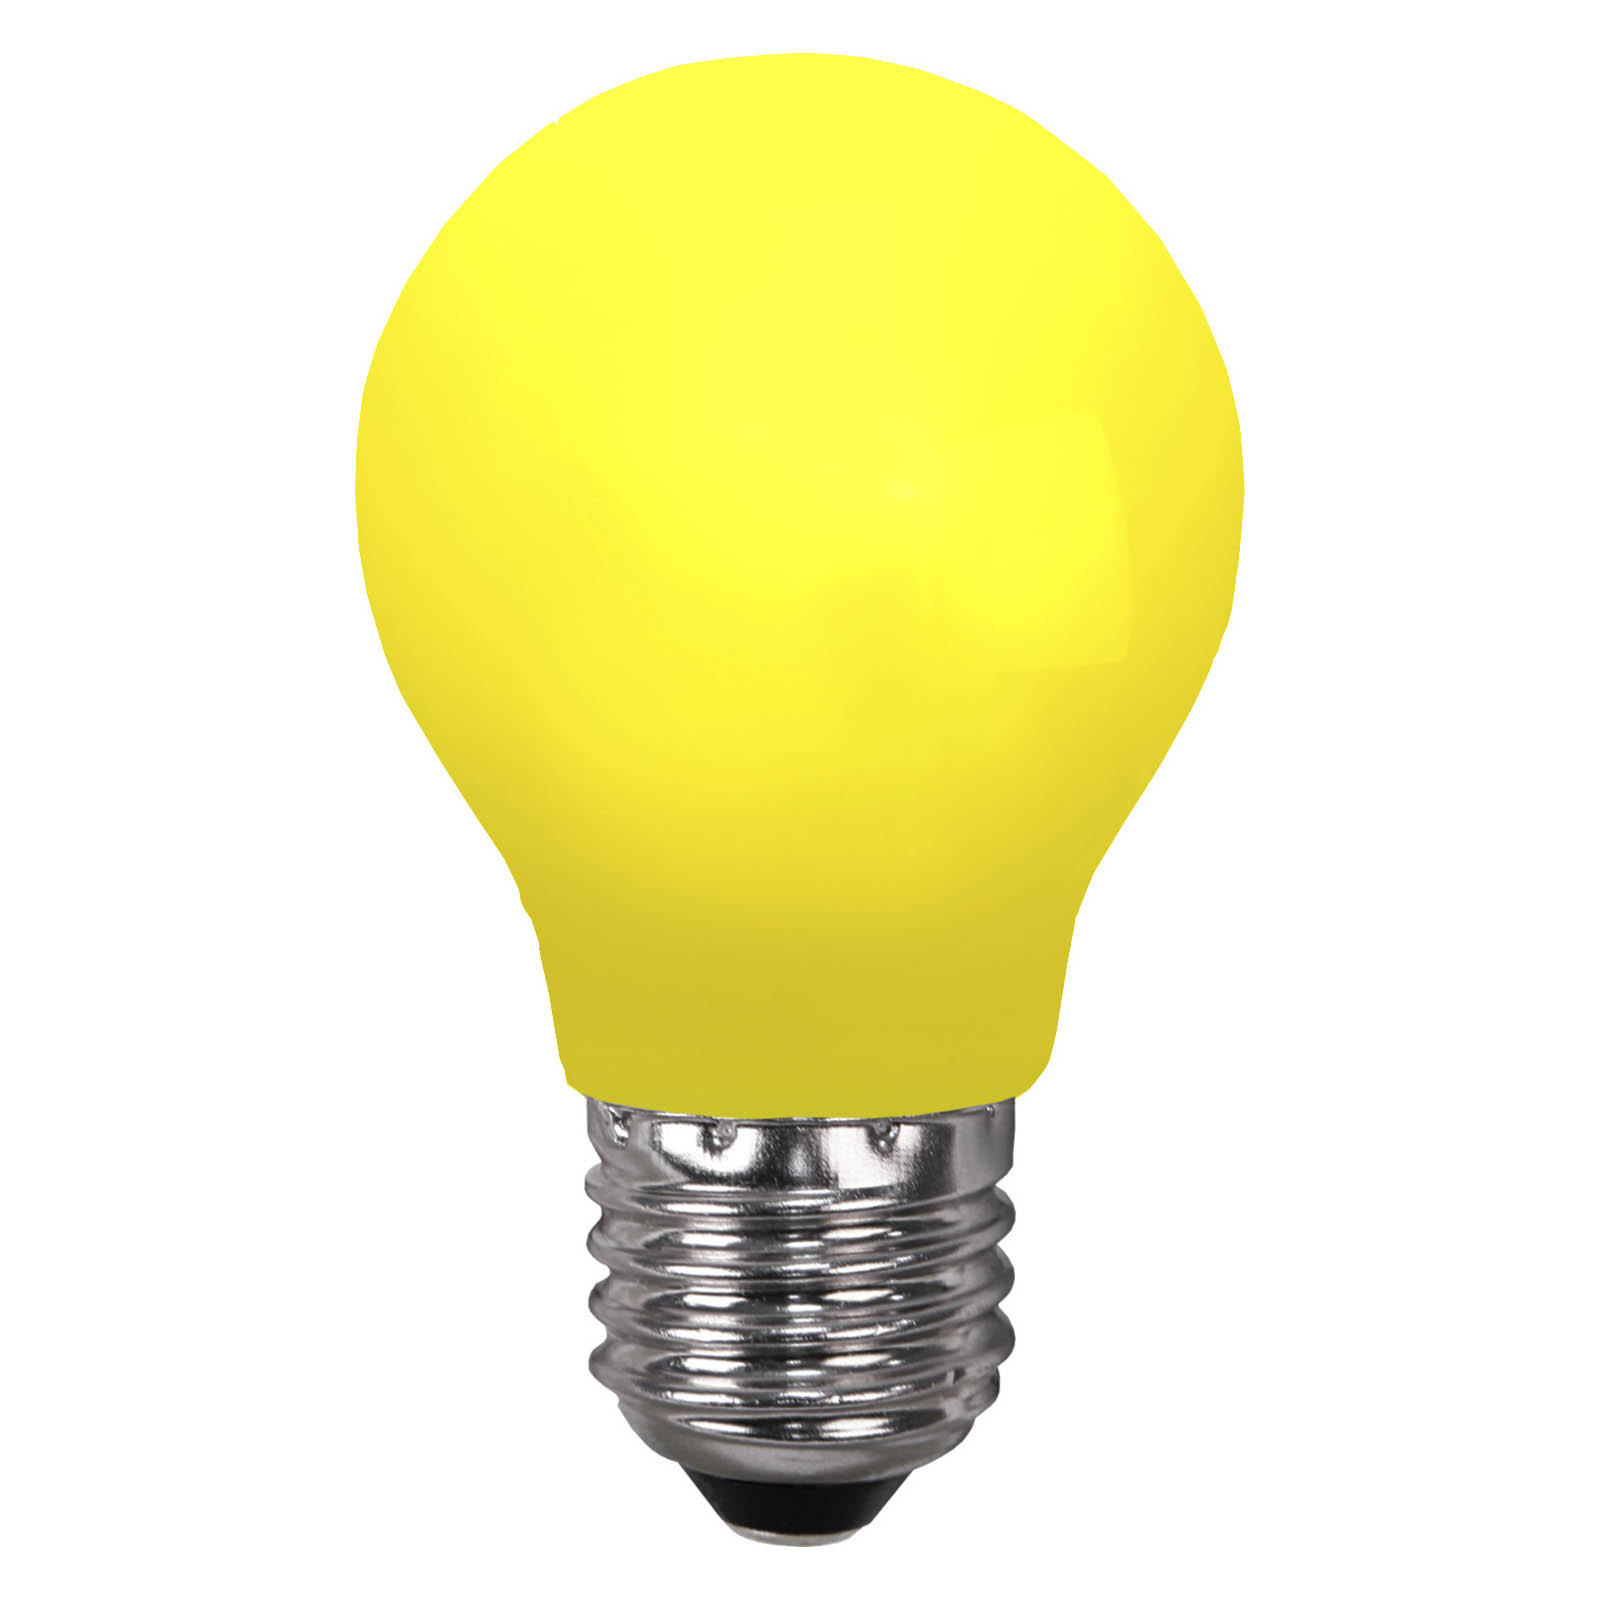 Żarówka LED E27 do łańcuchów świetlnych, odporna na uszkodzenia, żółta